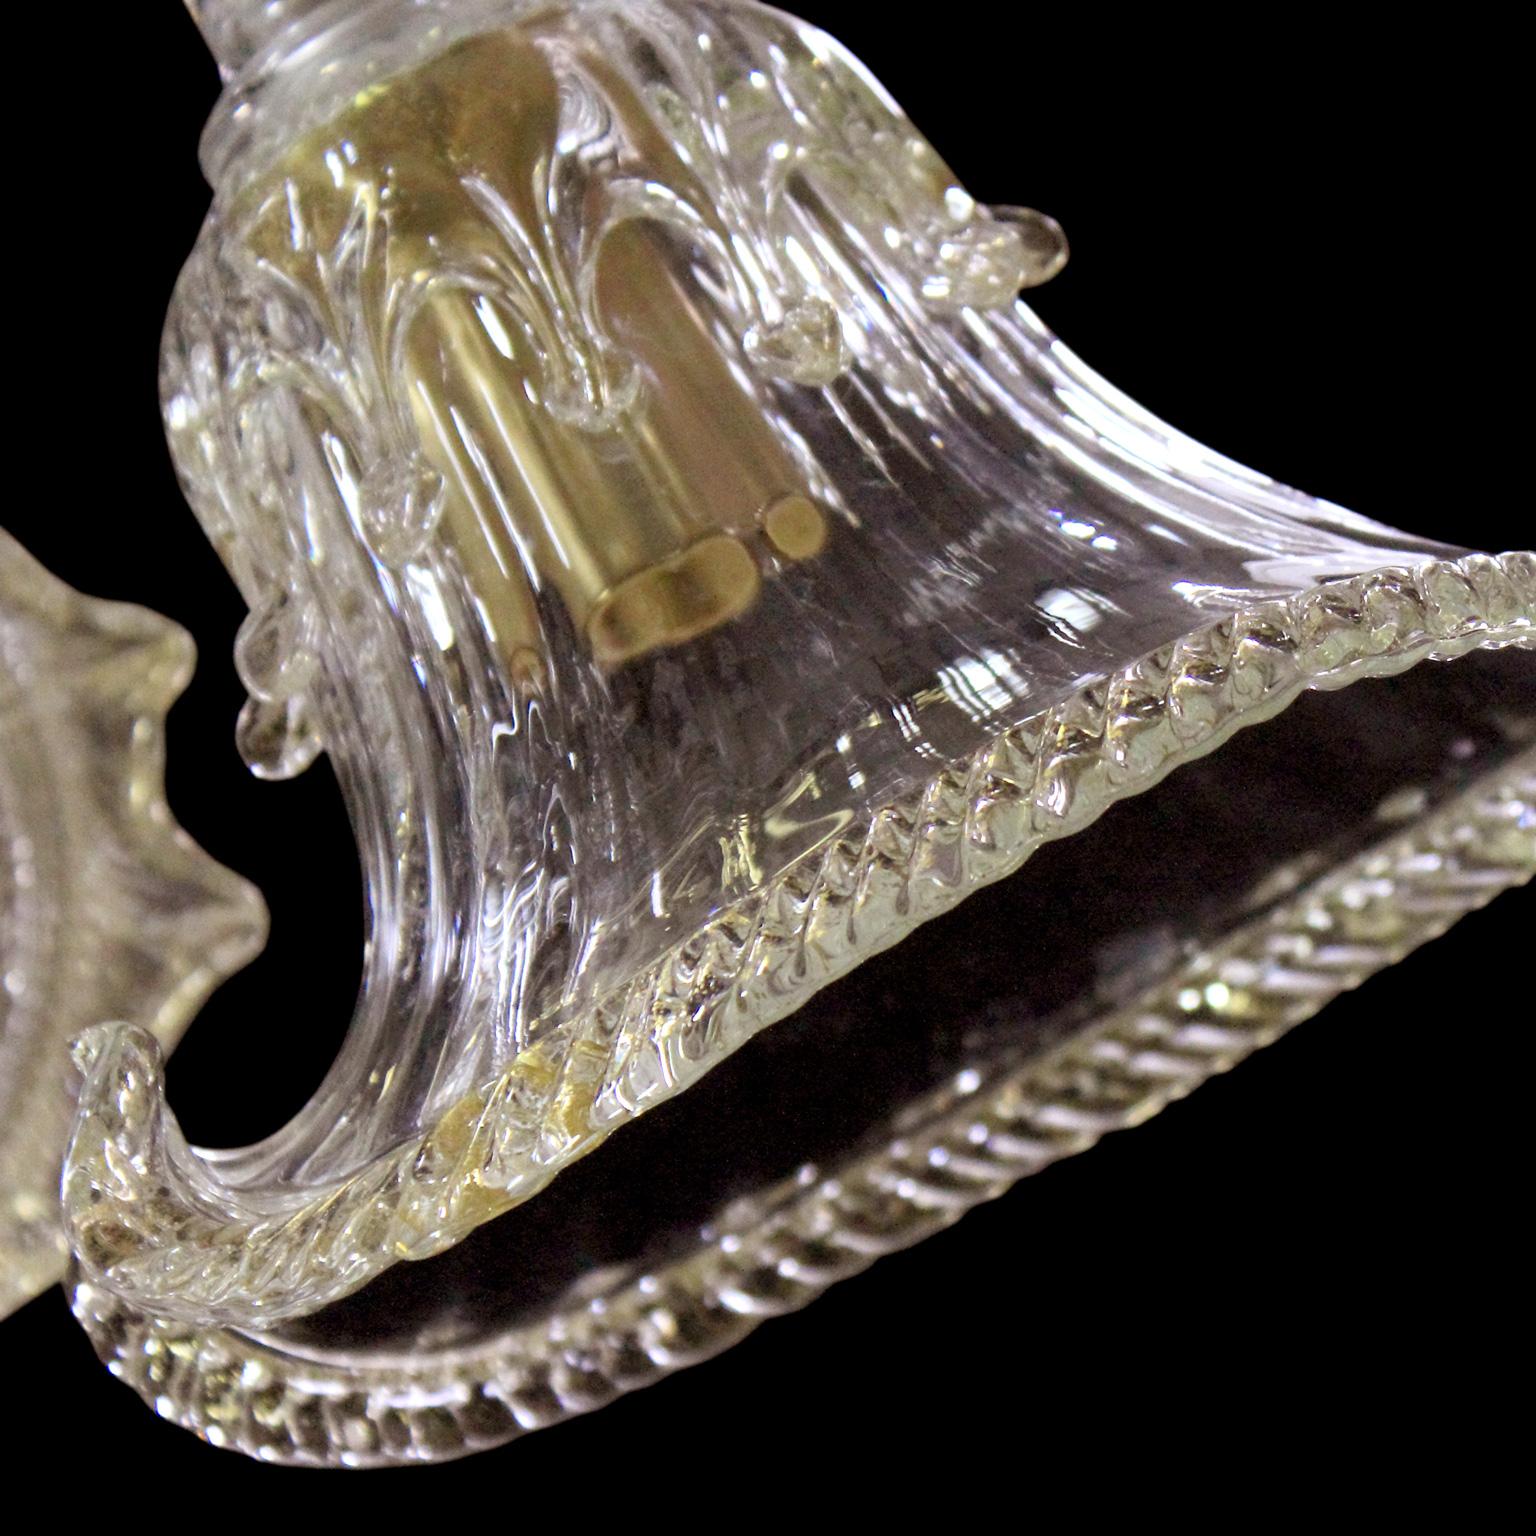 Ce plafonnier vénitien en cristal et détails dorés en verre artistique de Murano présente un design organique, qui est le résultat d'une inspiration prise dans la nature. Les coupes et certains détails rappellent le flux fluide de l'eau, un élément